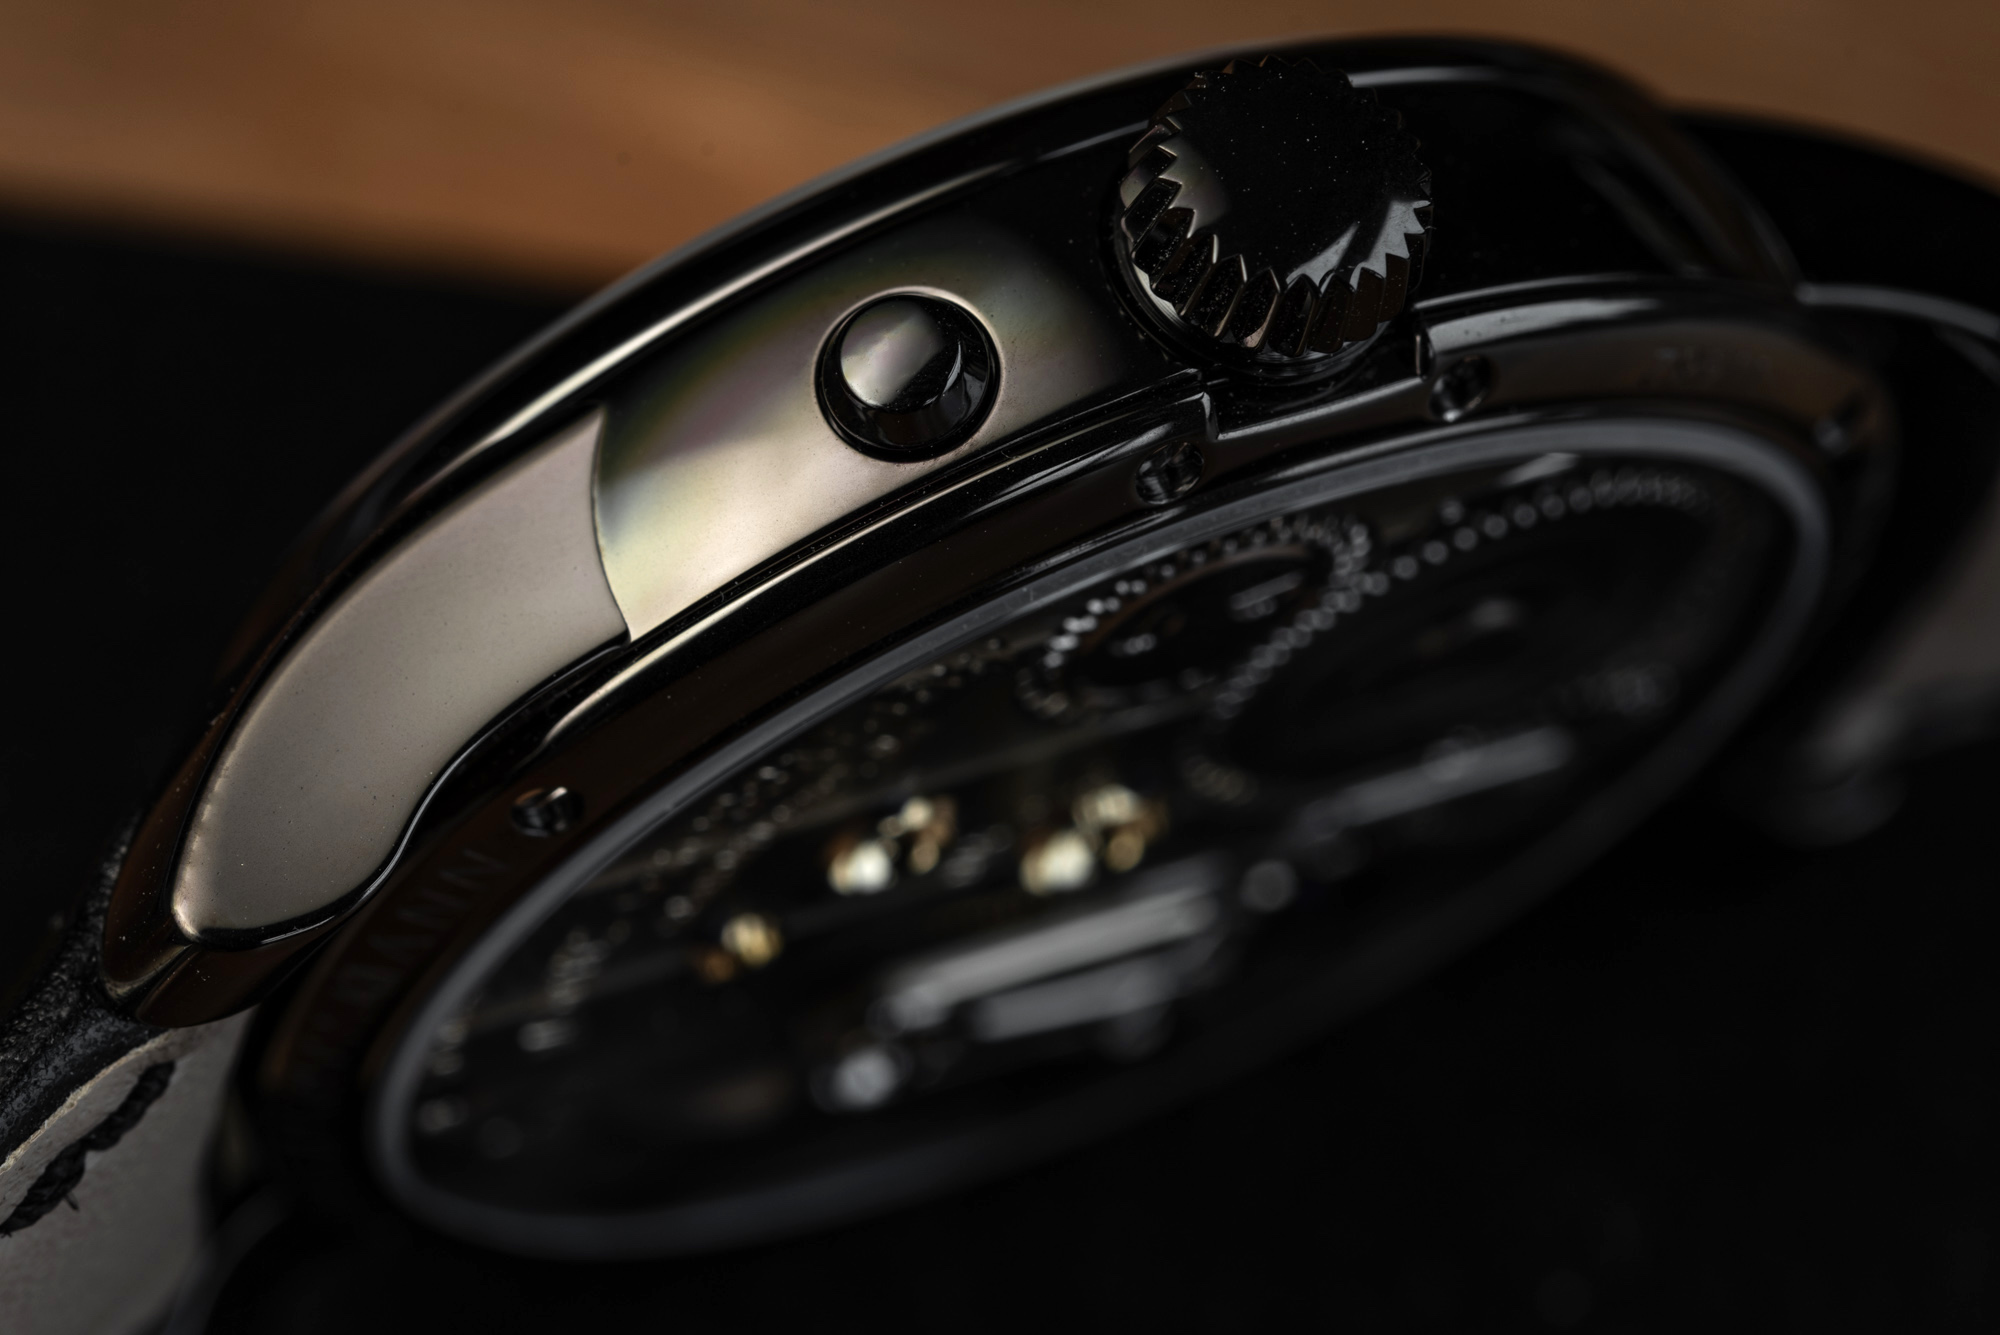 莫里茨·格罗斯曼Moritz Grossmann动力储存黑色精钢腕表